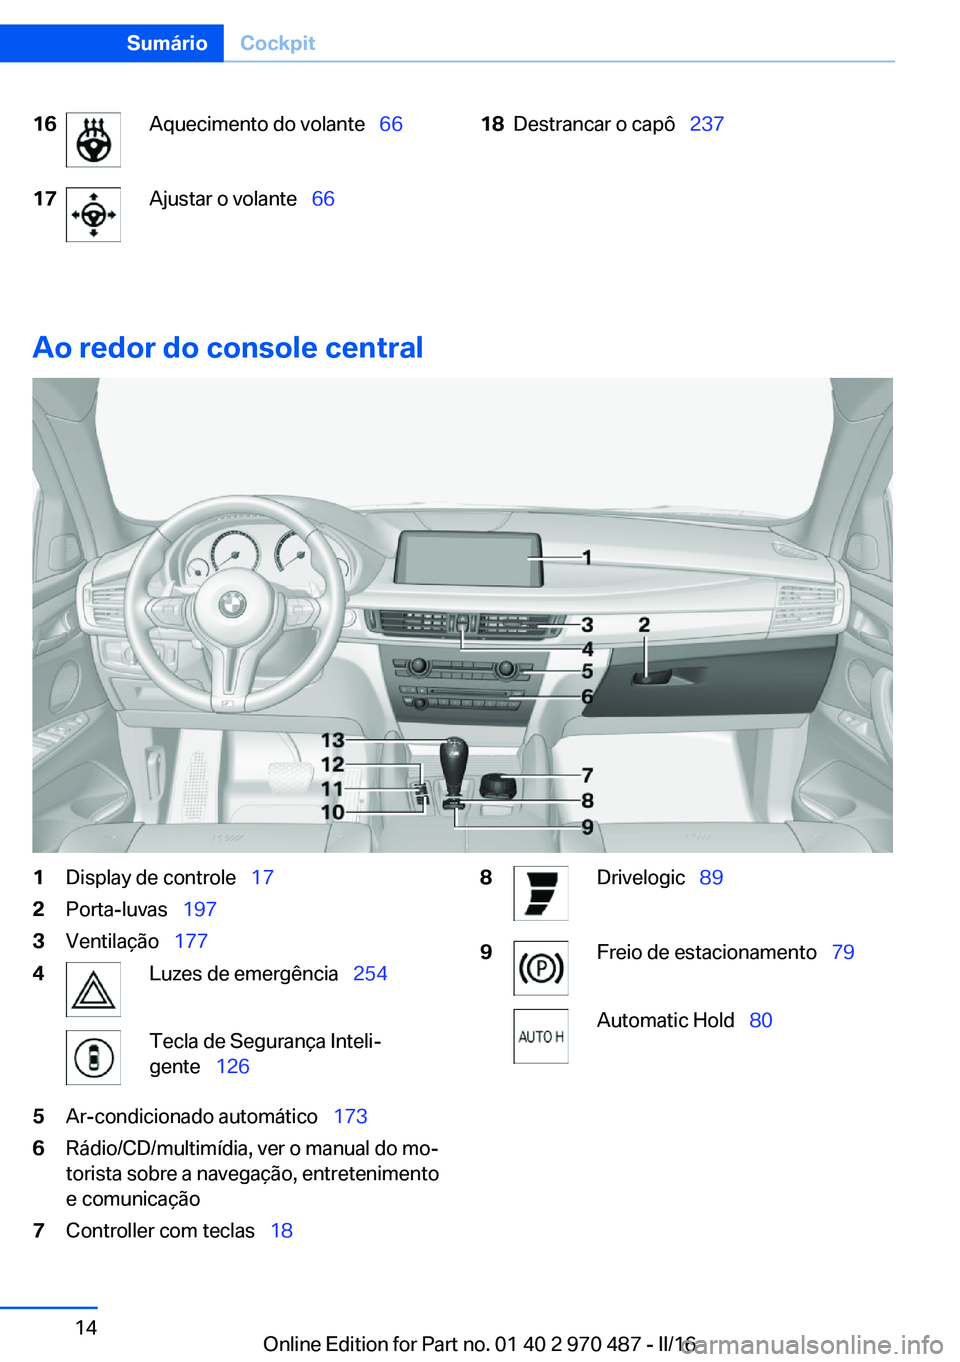 BMW X6 M 2016  Manual do condutor (in Portuguese) 16Aquecimento do volante  6617Ajustar o volante  6618Destrancar o capô   237
Ao redor do console central
1Display de controle   172Porta-luvas  1973Ventilação  1774Luzes de 